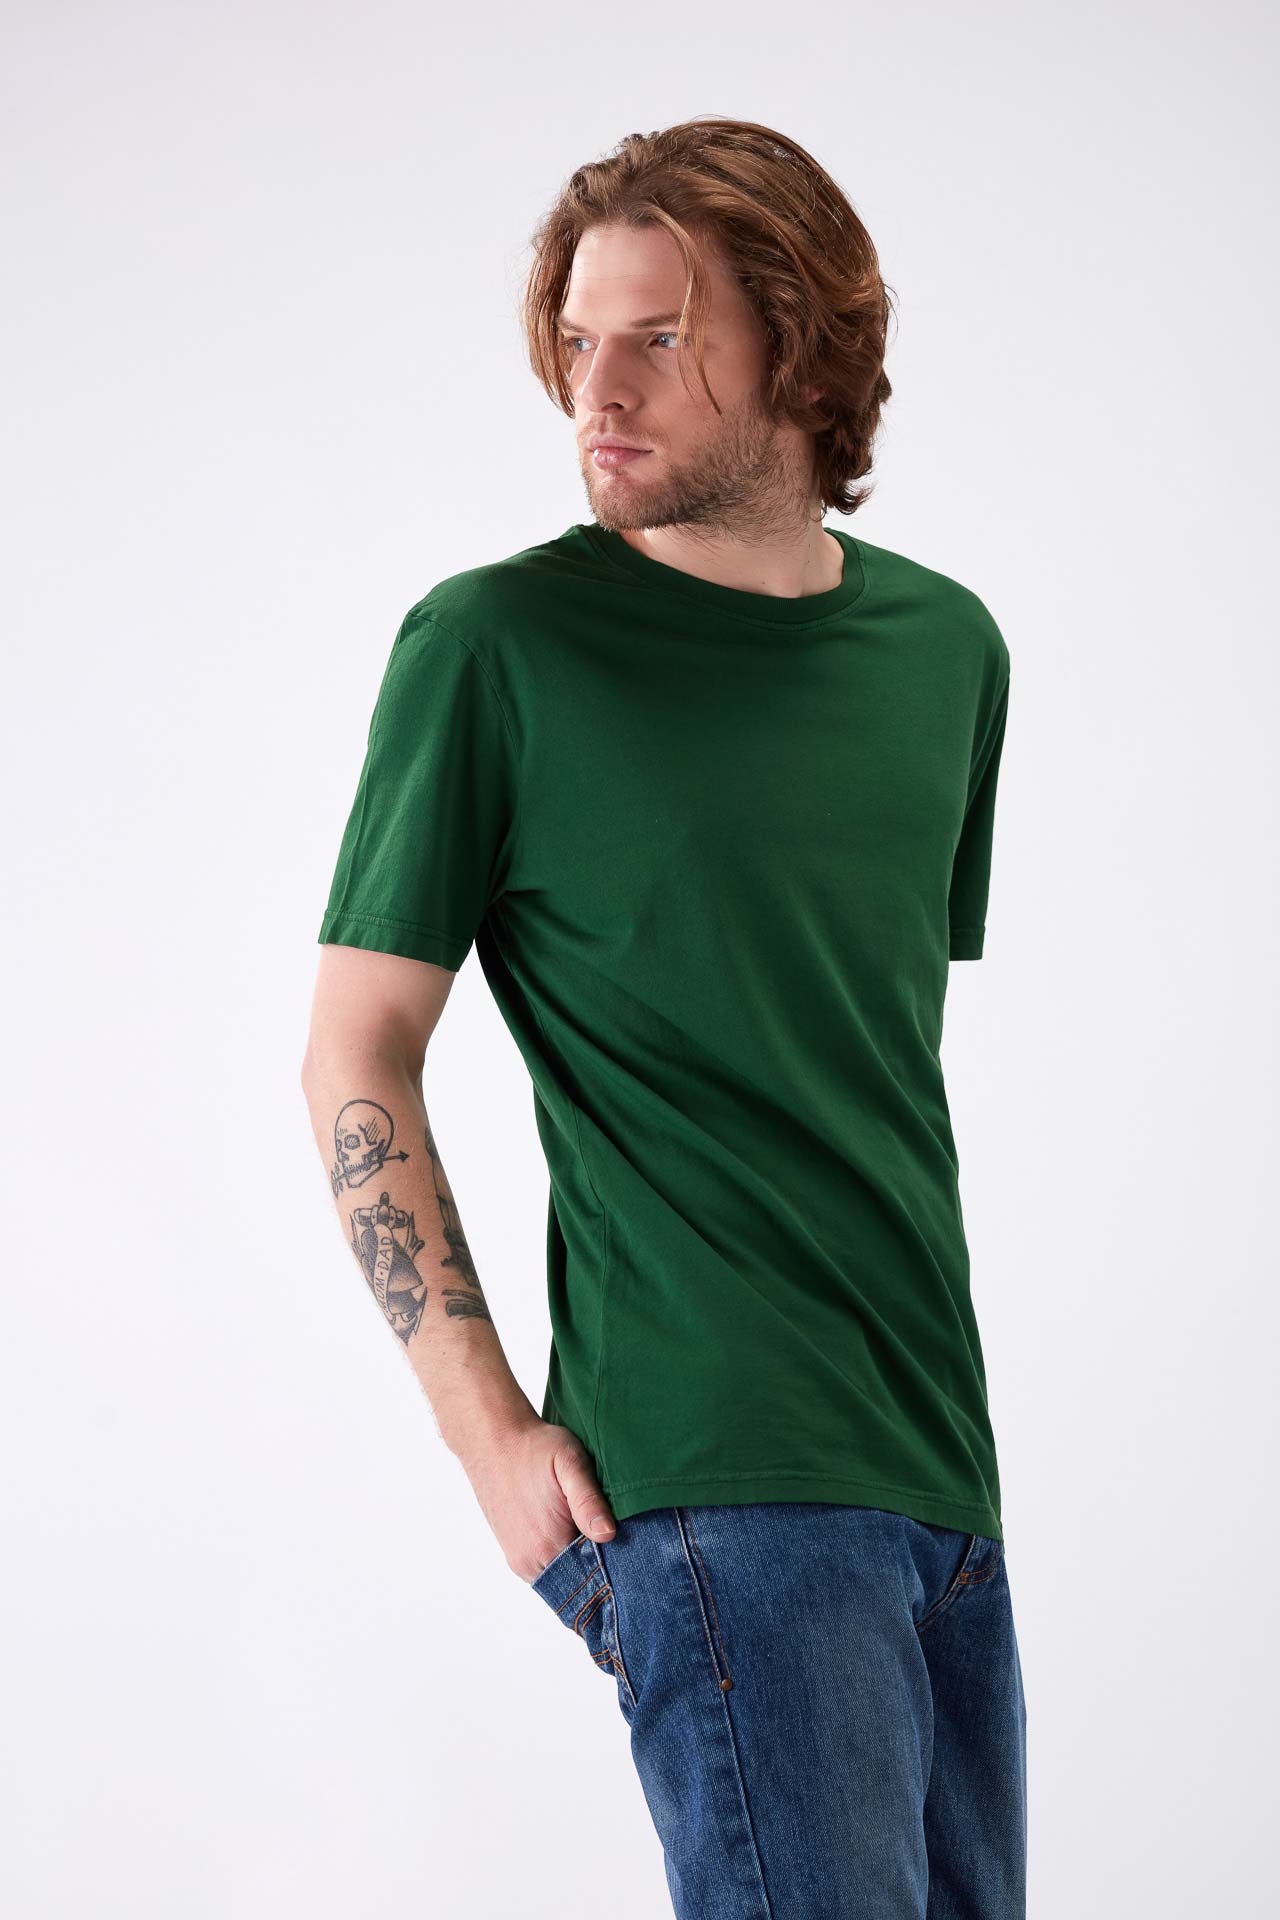 160/310 - T-shirt Homem